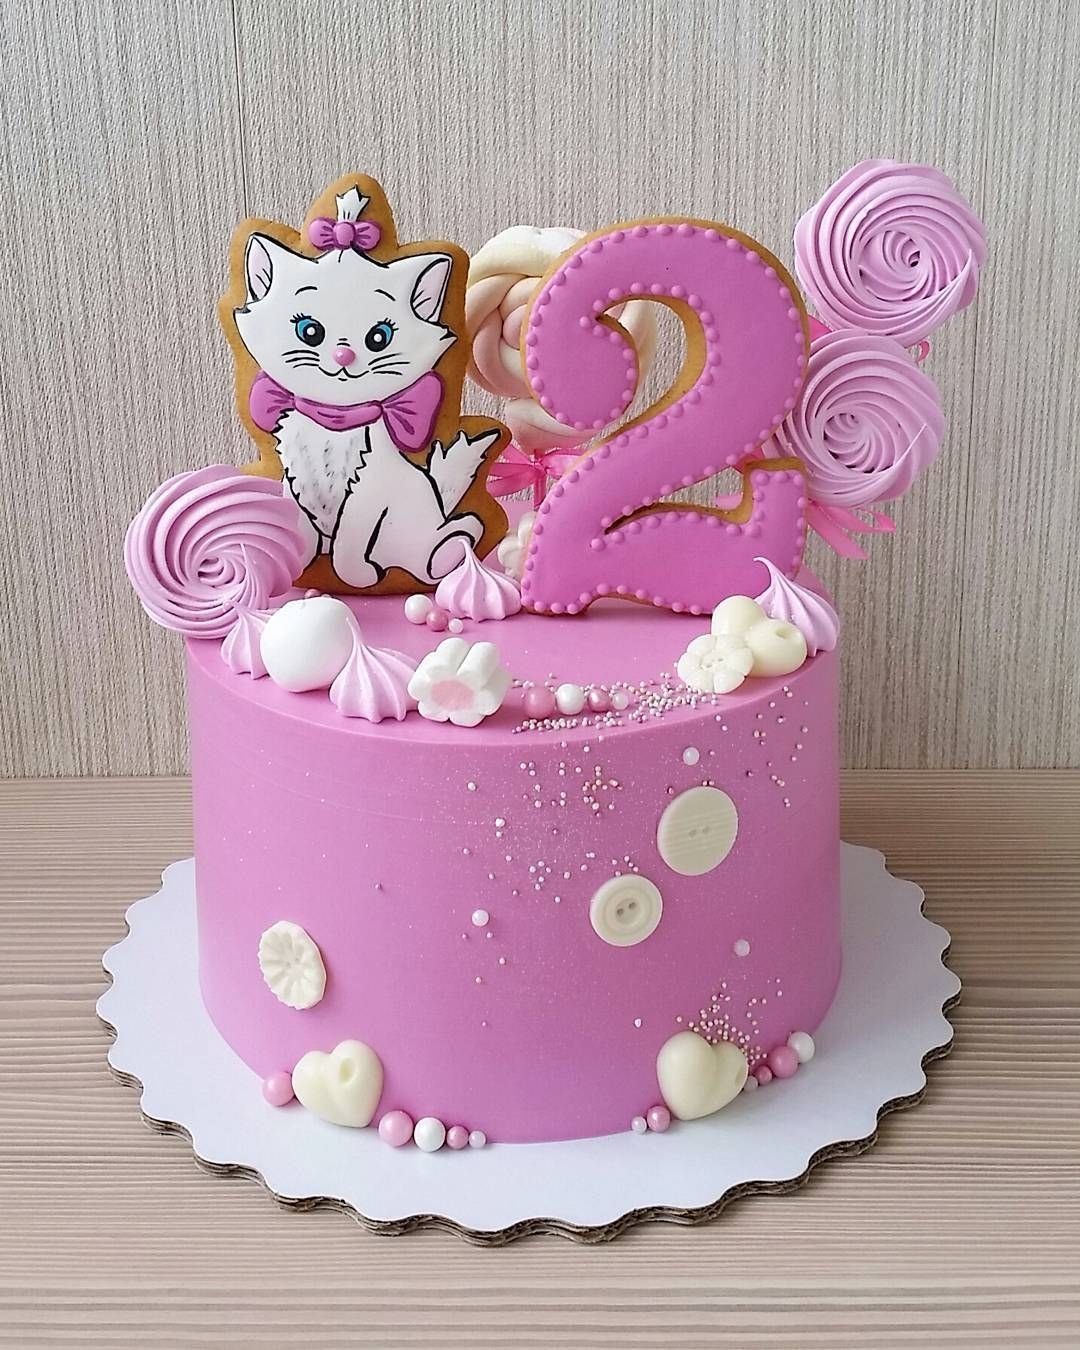 тортик на день рождения девочке 2 года